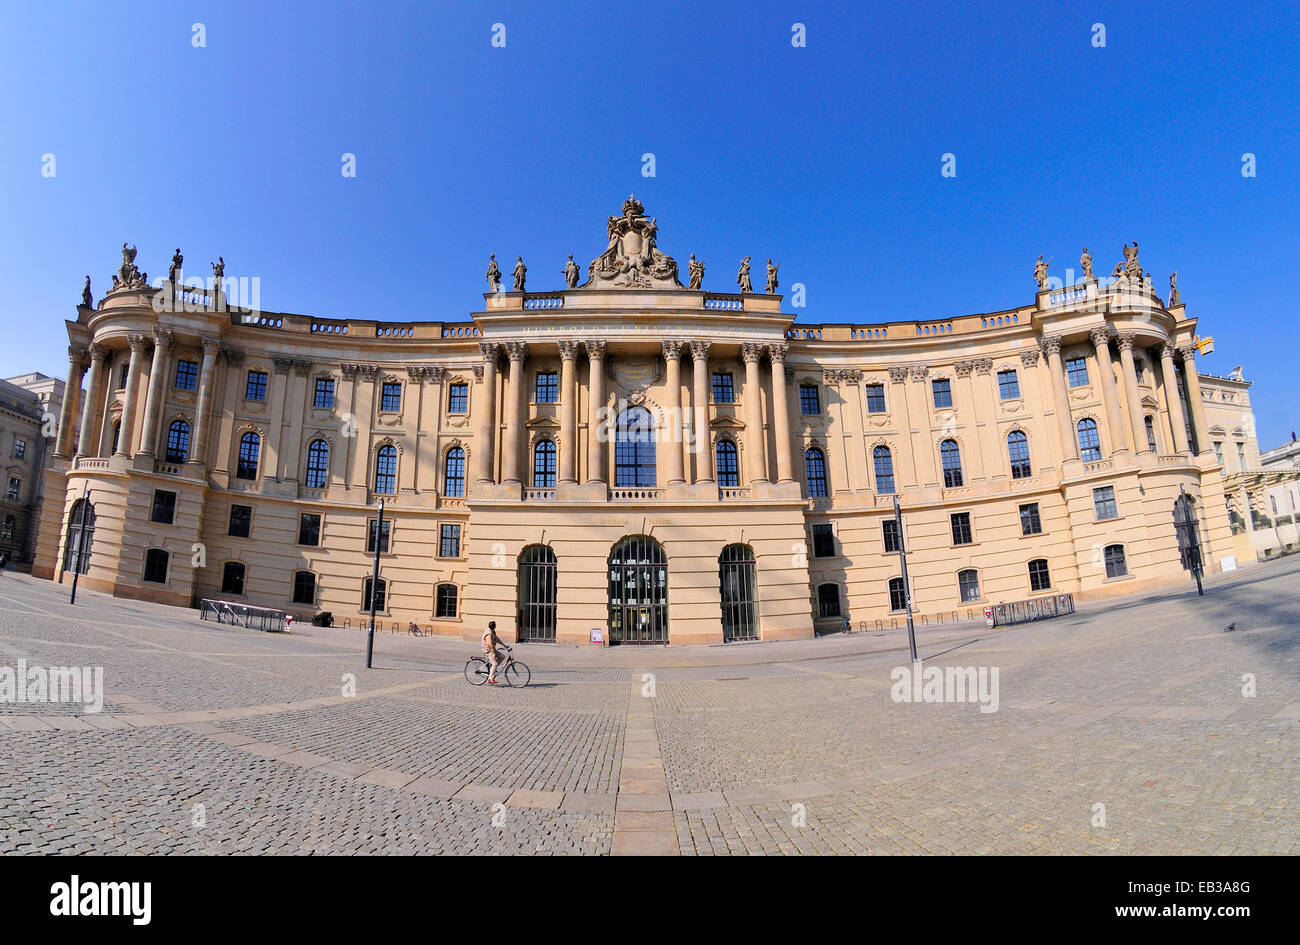 Berlín, Alemania. Altes Palais / El antiguo Palacio (1837; neo-clásica) en Unter den Linden, nº 9. Ahora la facultad de derecho de la Univ de Humboldt Foto de stock